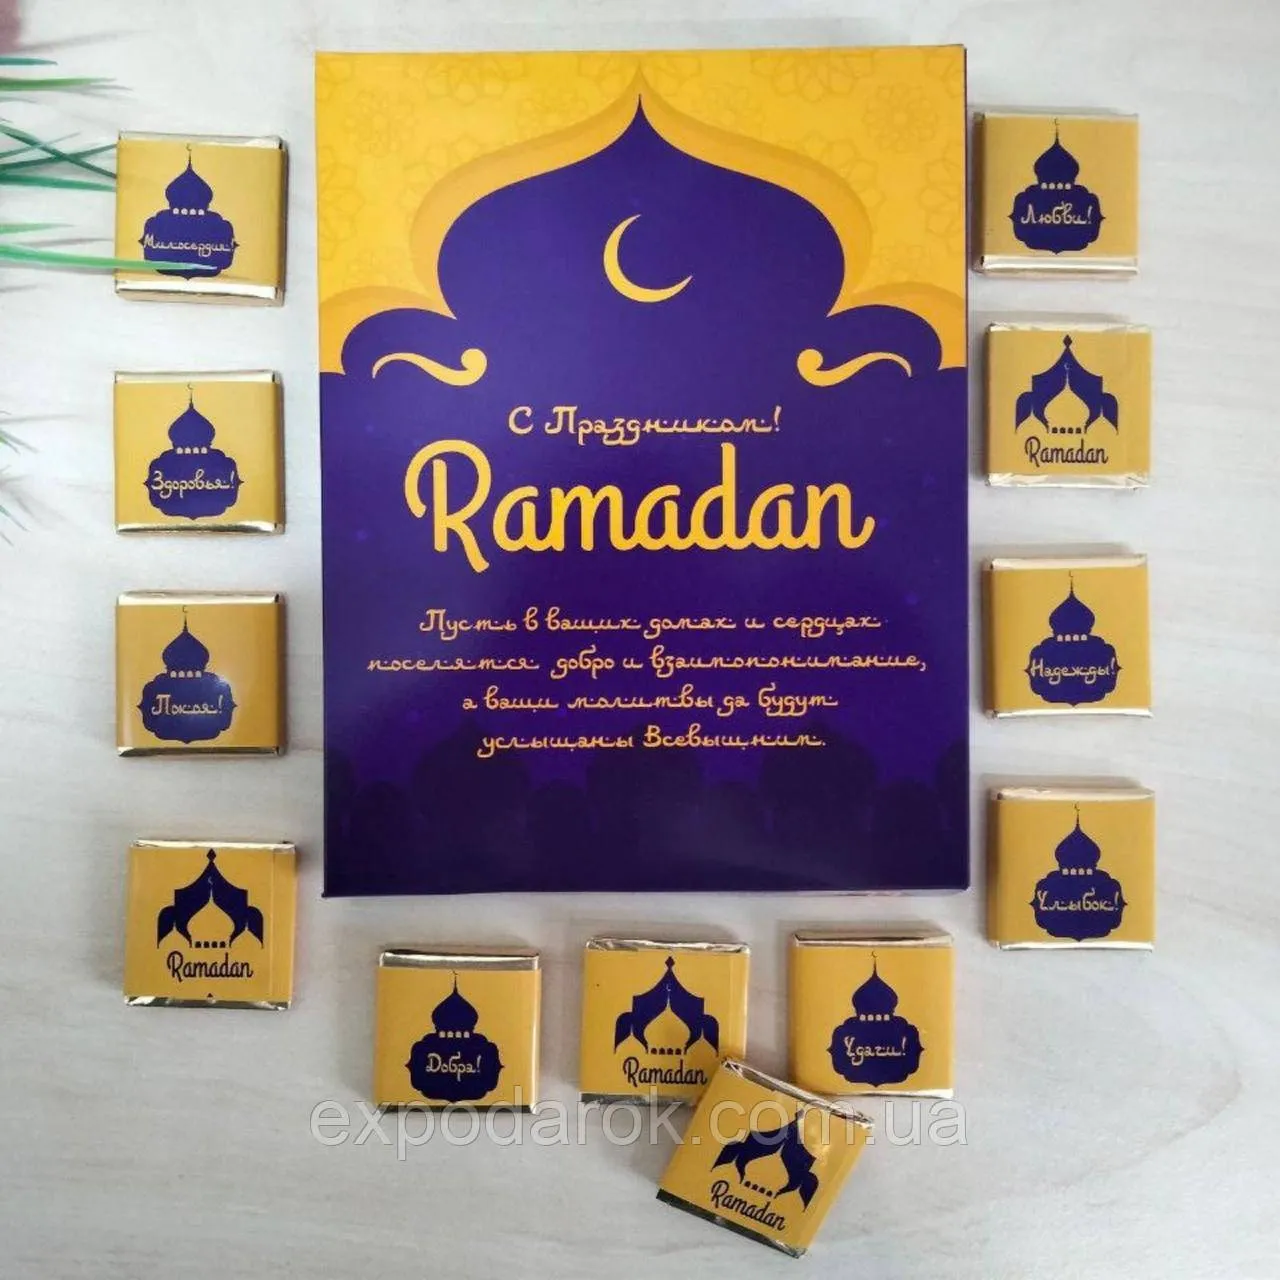 Фото с праздником рамадан. С праздником Рамадан. С праздником Рамадан картинки. Сценарий мероприятия Рамадан. Рисунки на Рамадан.